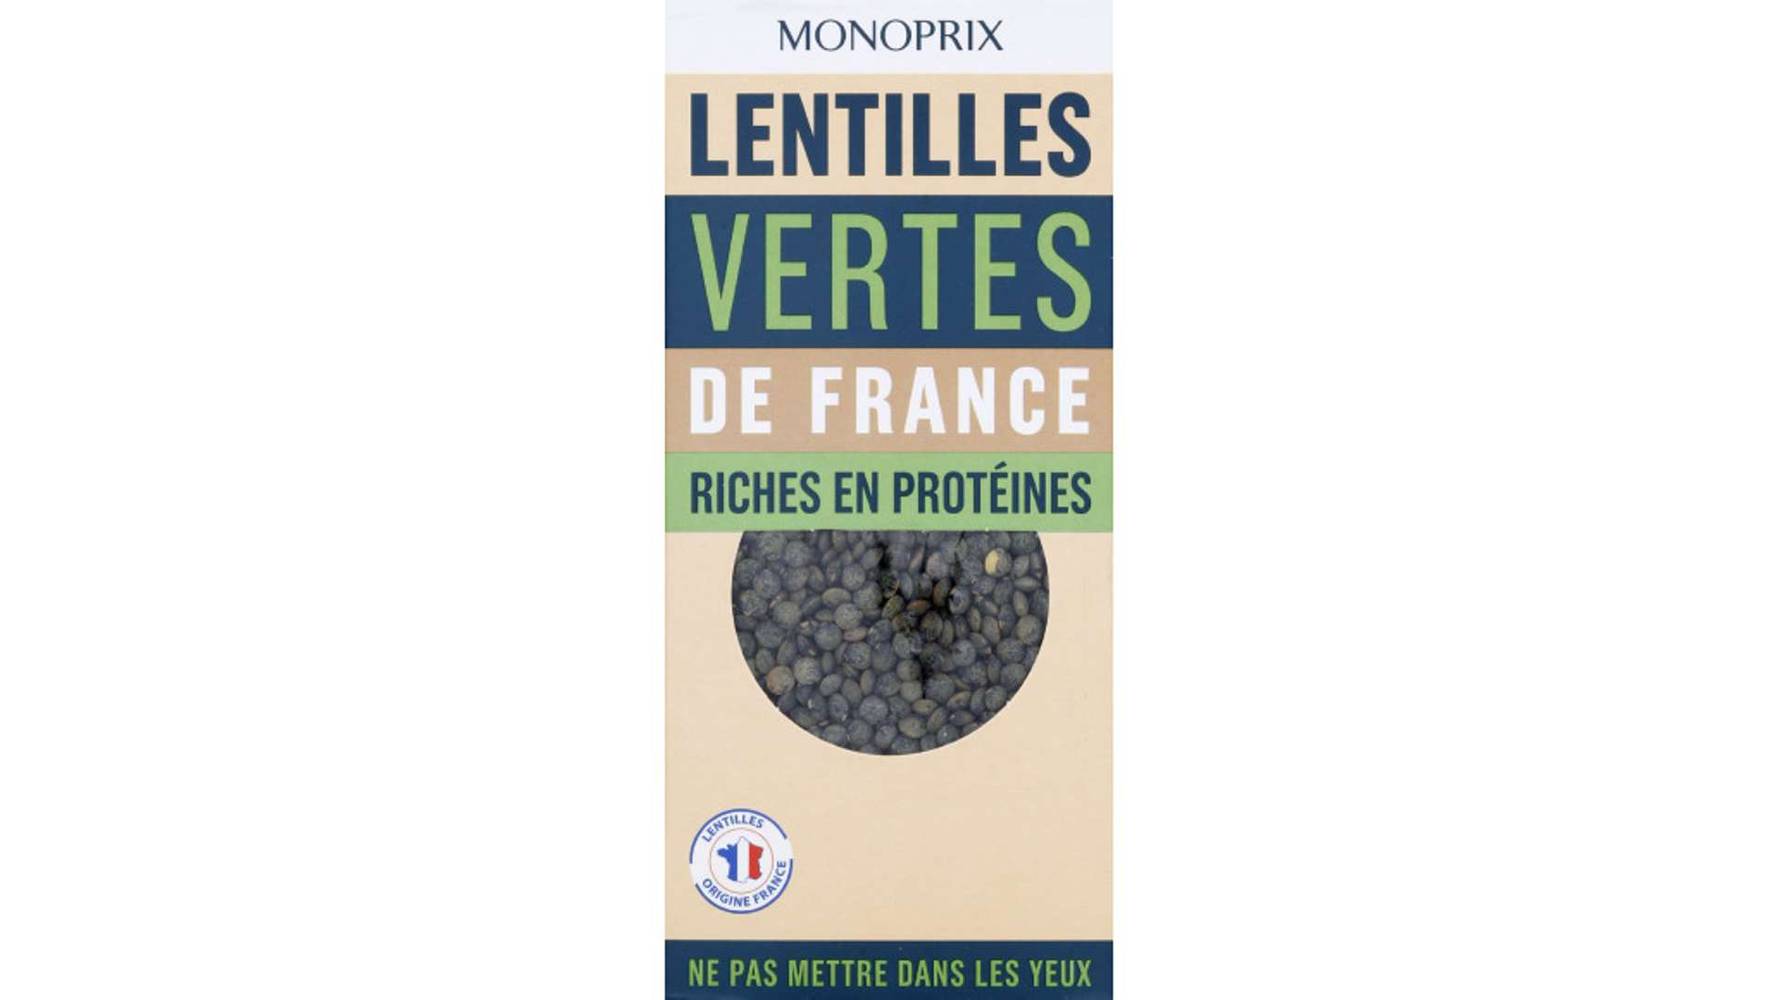 Monoprix Lentilles vertes de France L'étui de 500g